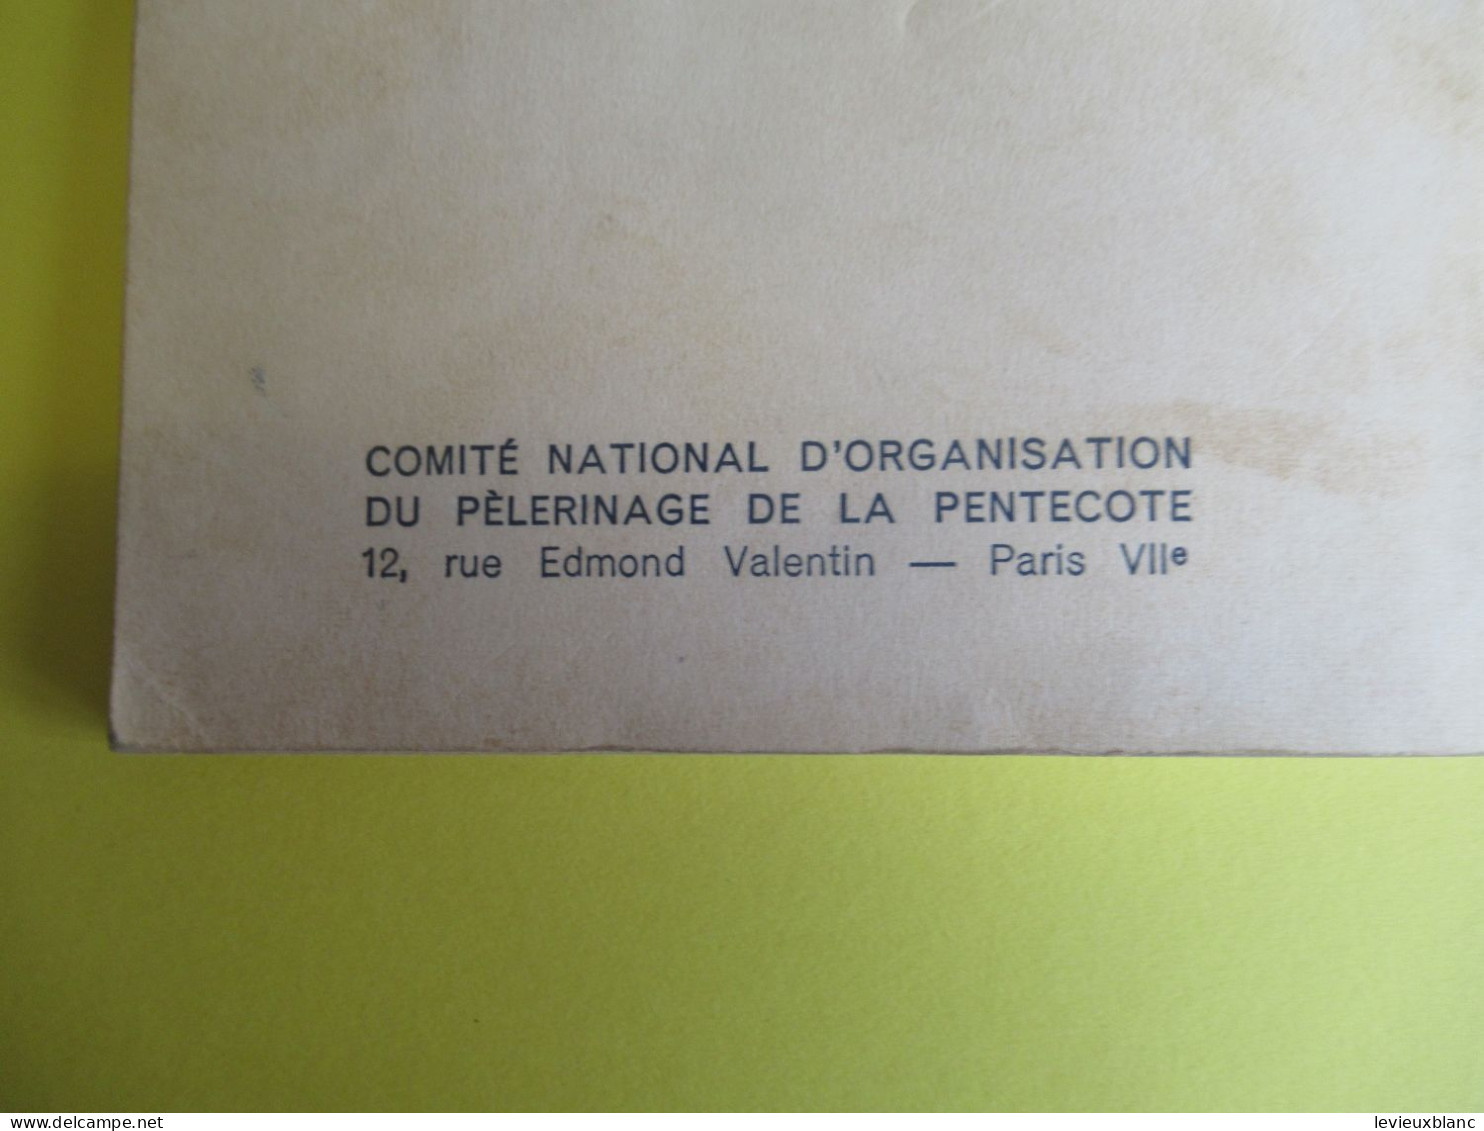 Manuel du Pèlerinage des Paroisses de France/ROME PENTECÔTE 1950/Action Catholique générale de France/ 1950      PGC542